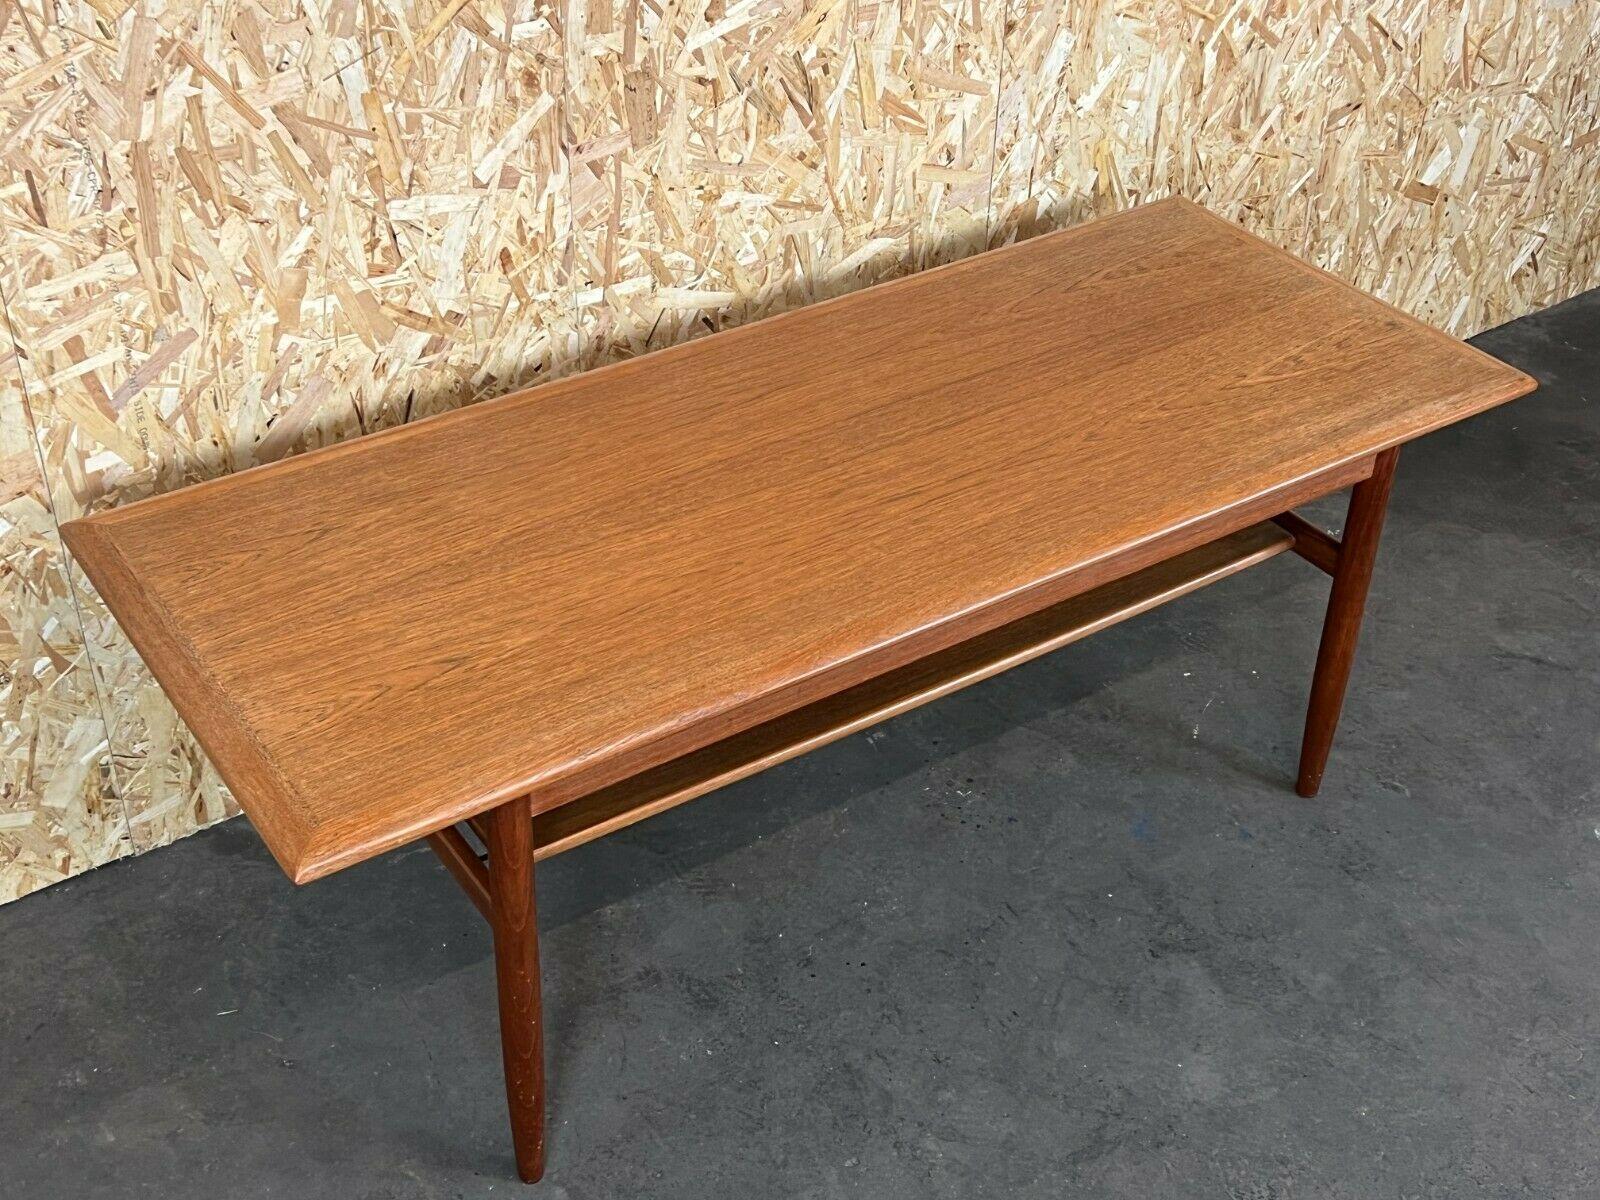 60s 70s Teak Table Coffee Table Danish Modern Design Denmark 2